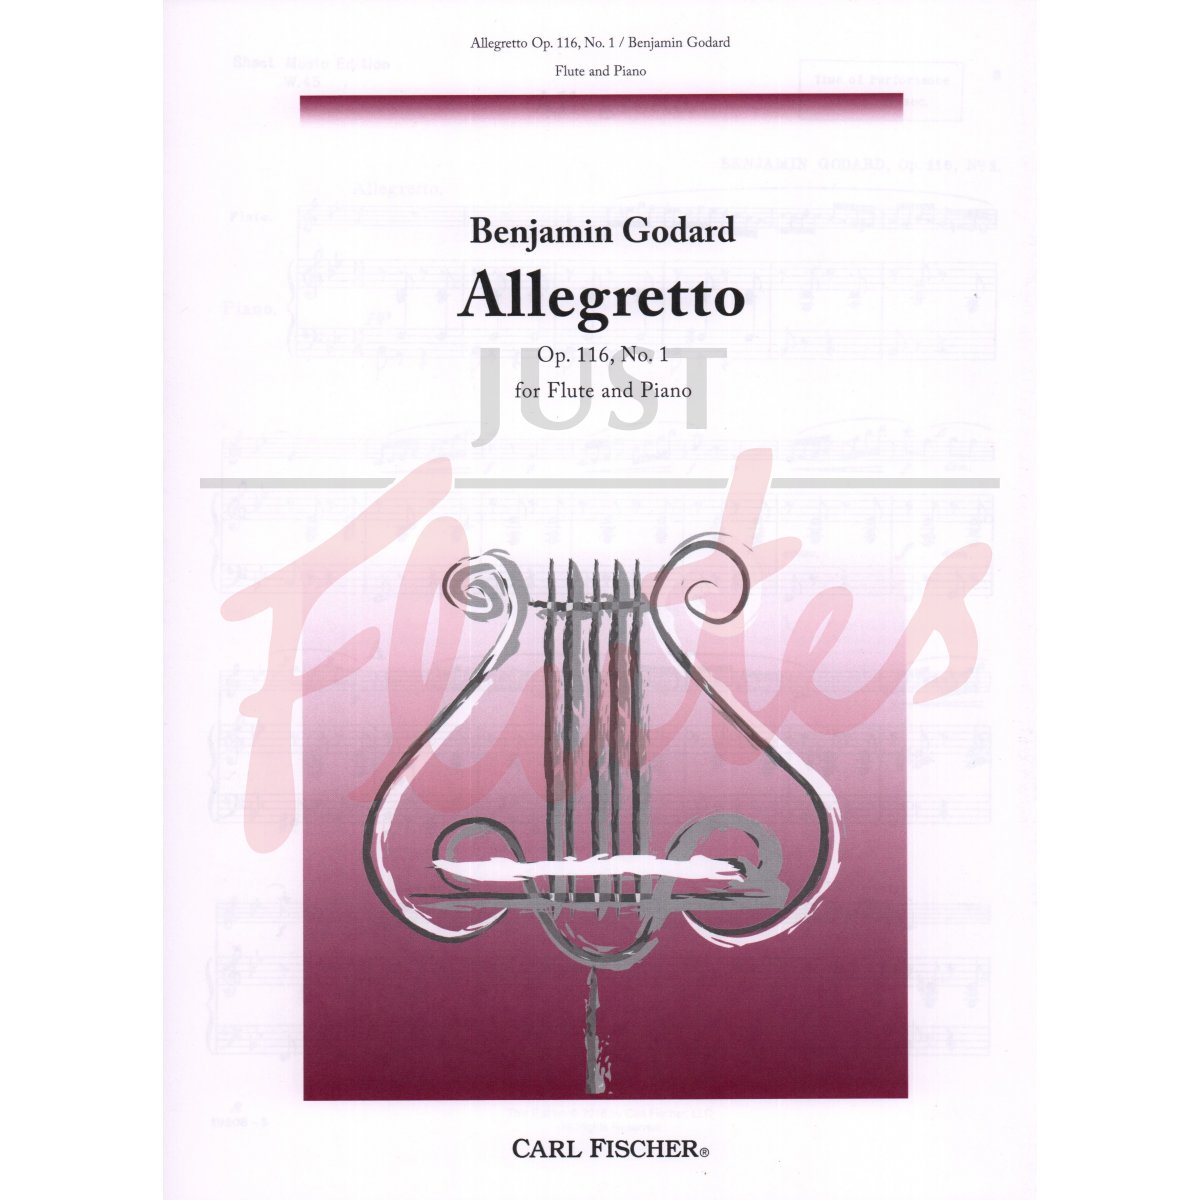 Allegretto for Flute and Piano